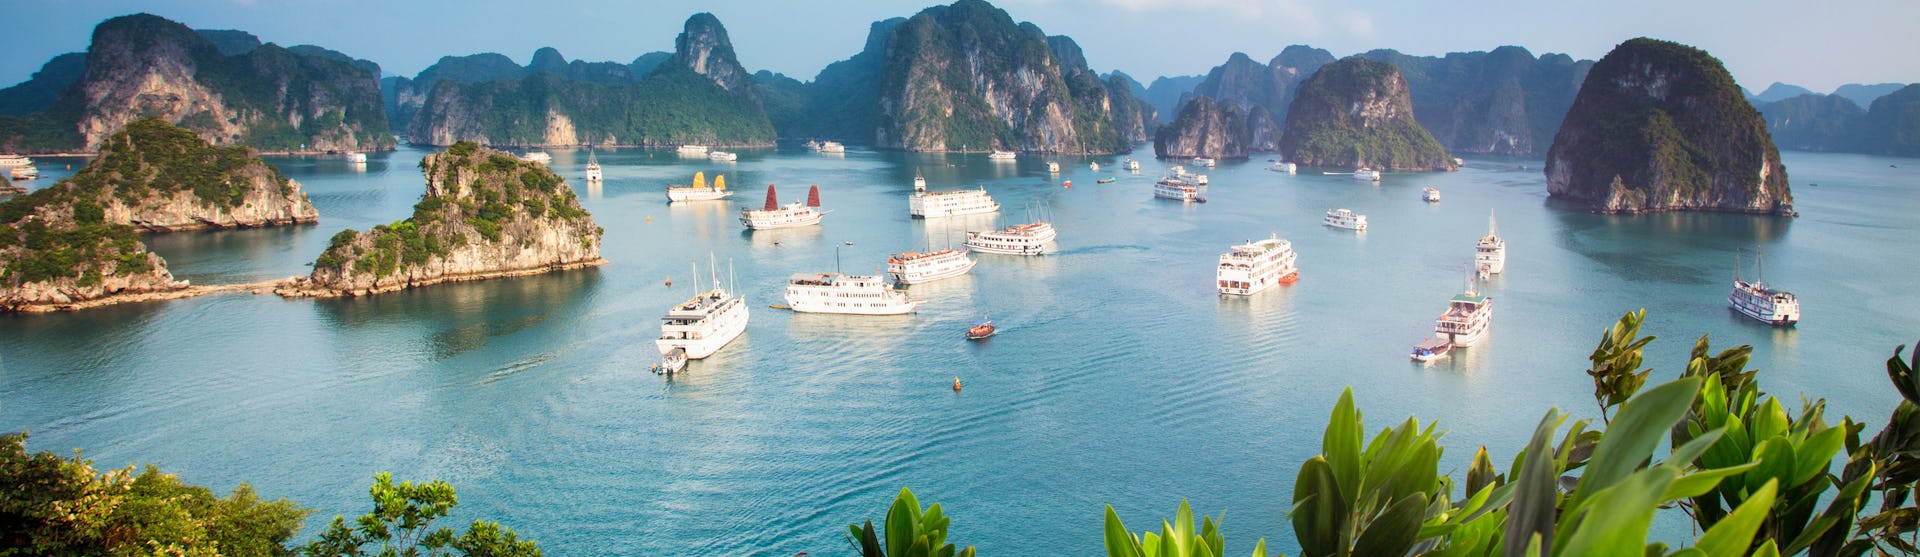 Ofertas de cruceros por Vietnam